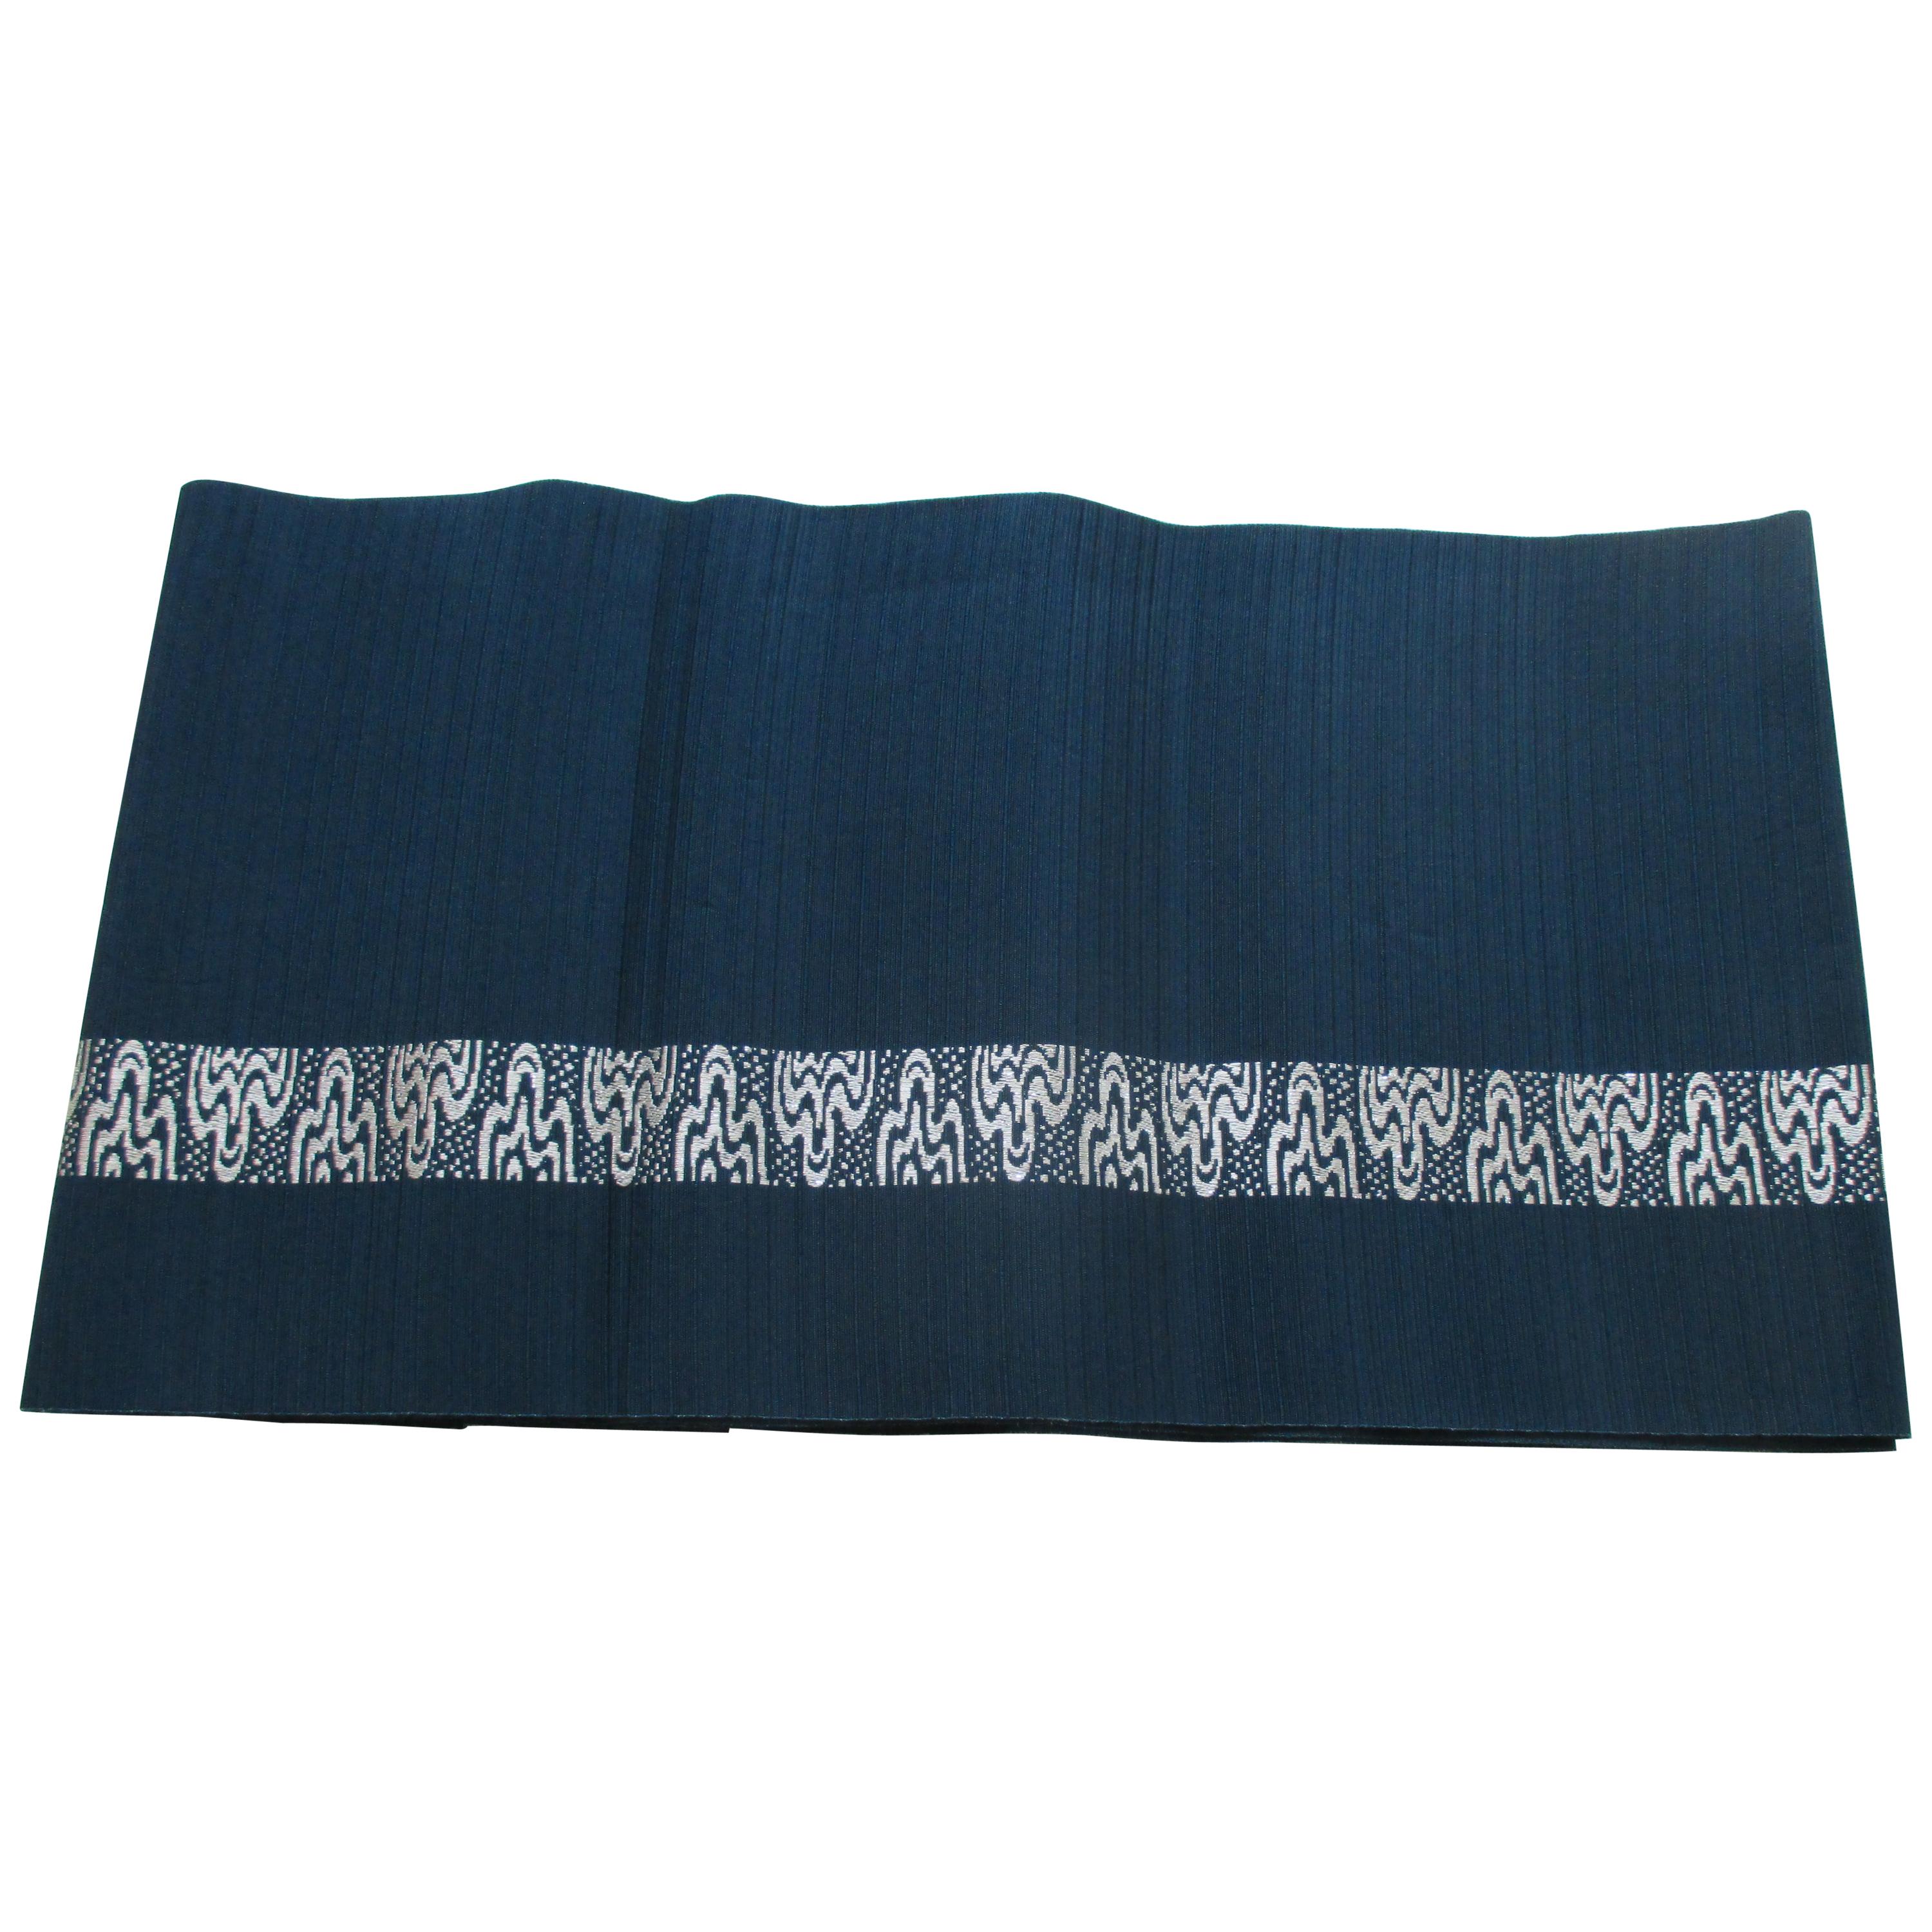 Blue & White Silk Woven Obi Textile Sash